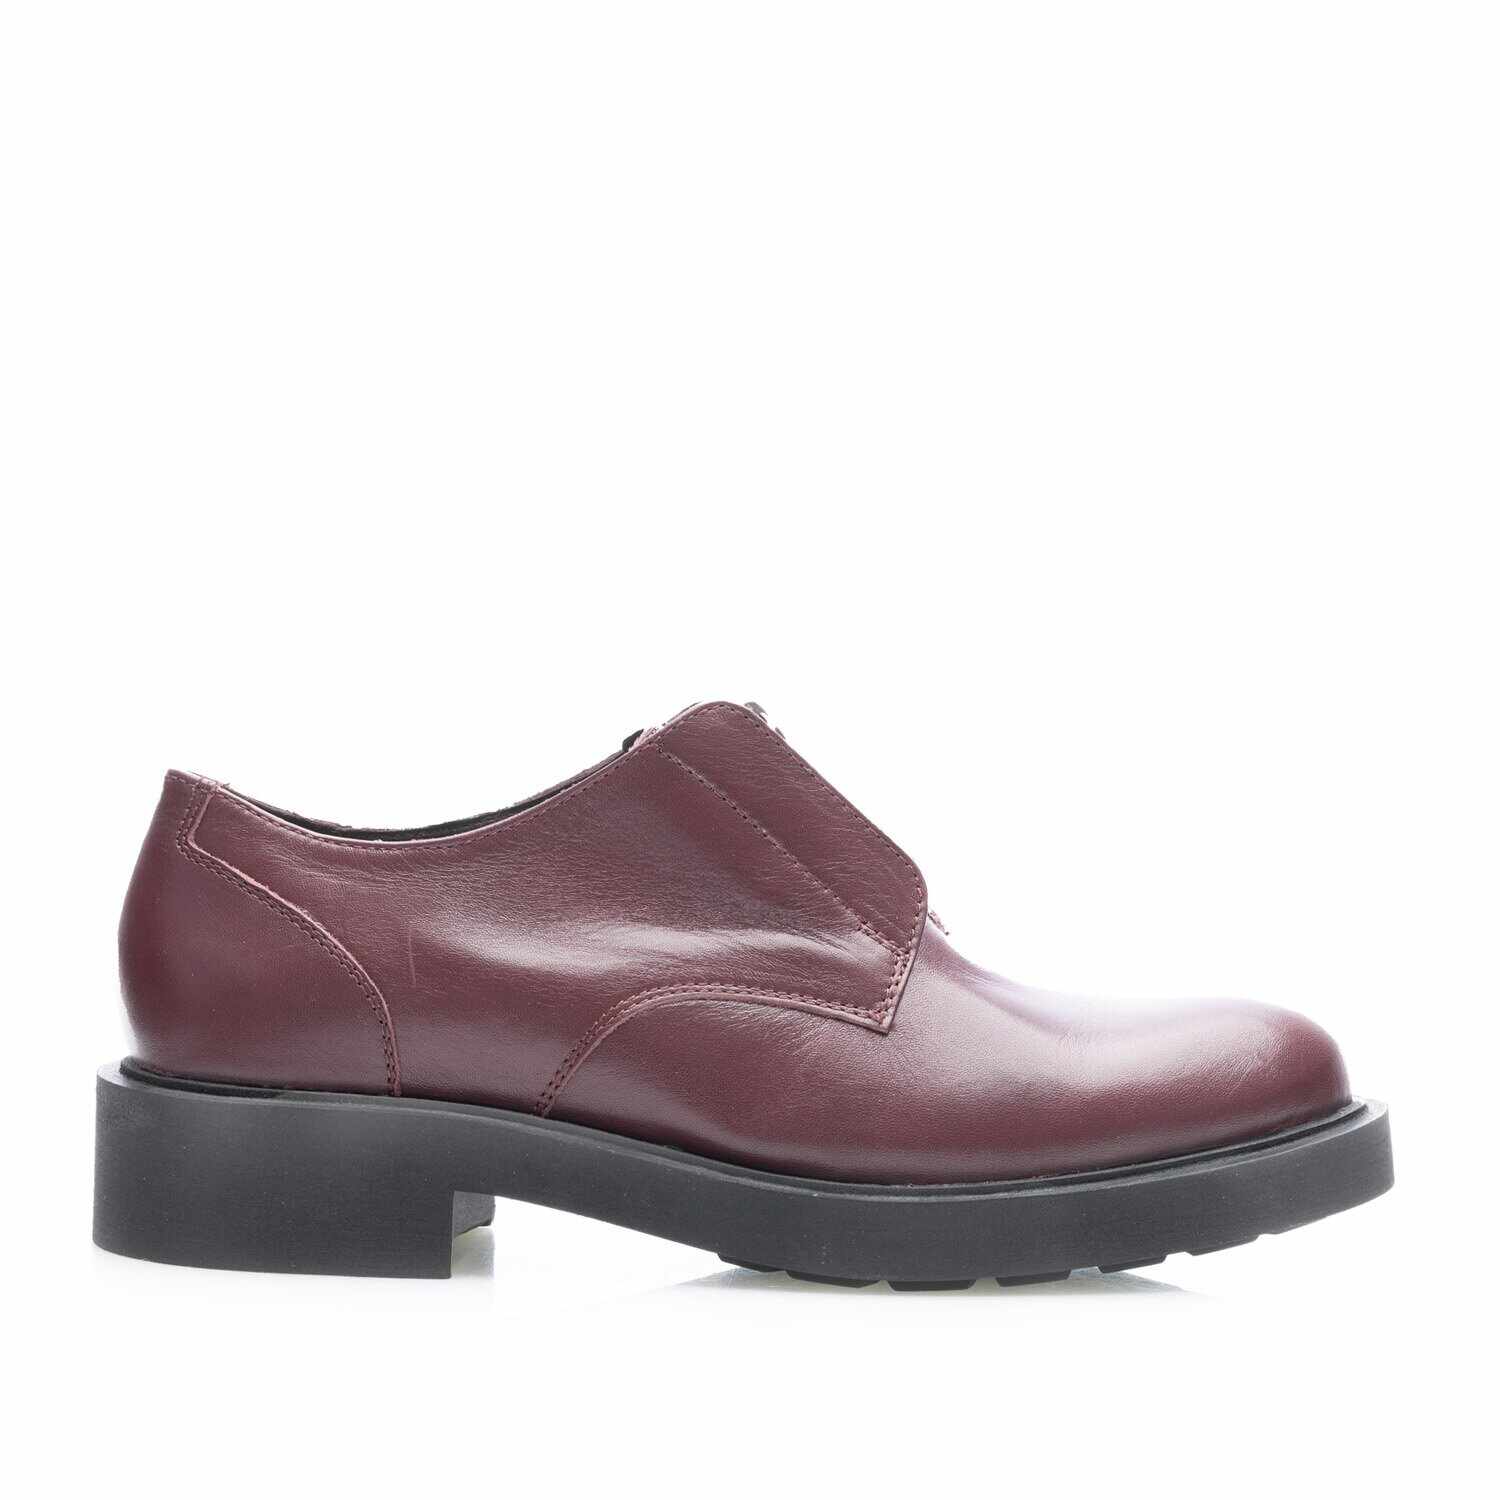 Pantofi casual damă din piele naturală, Leofex - 393 Vișiniu box